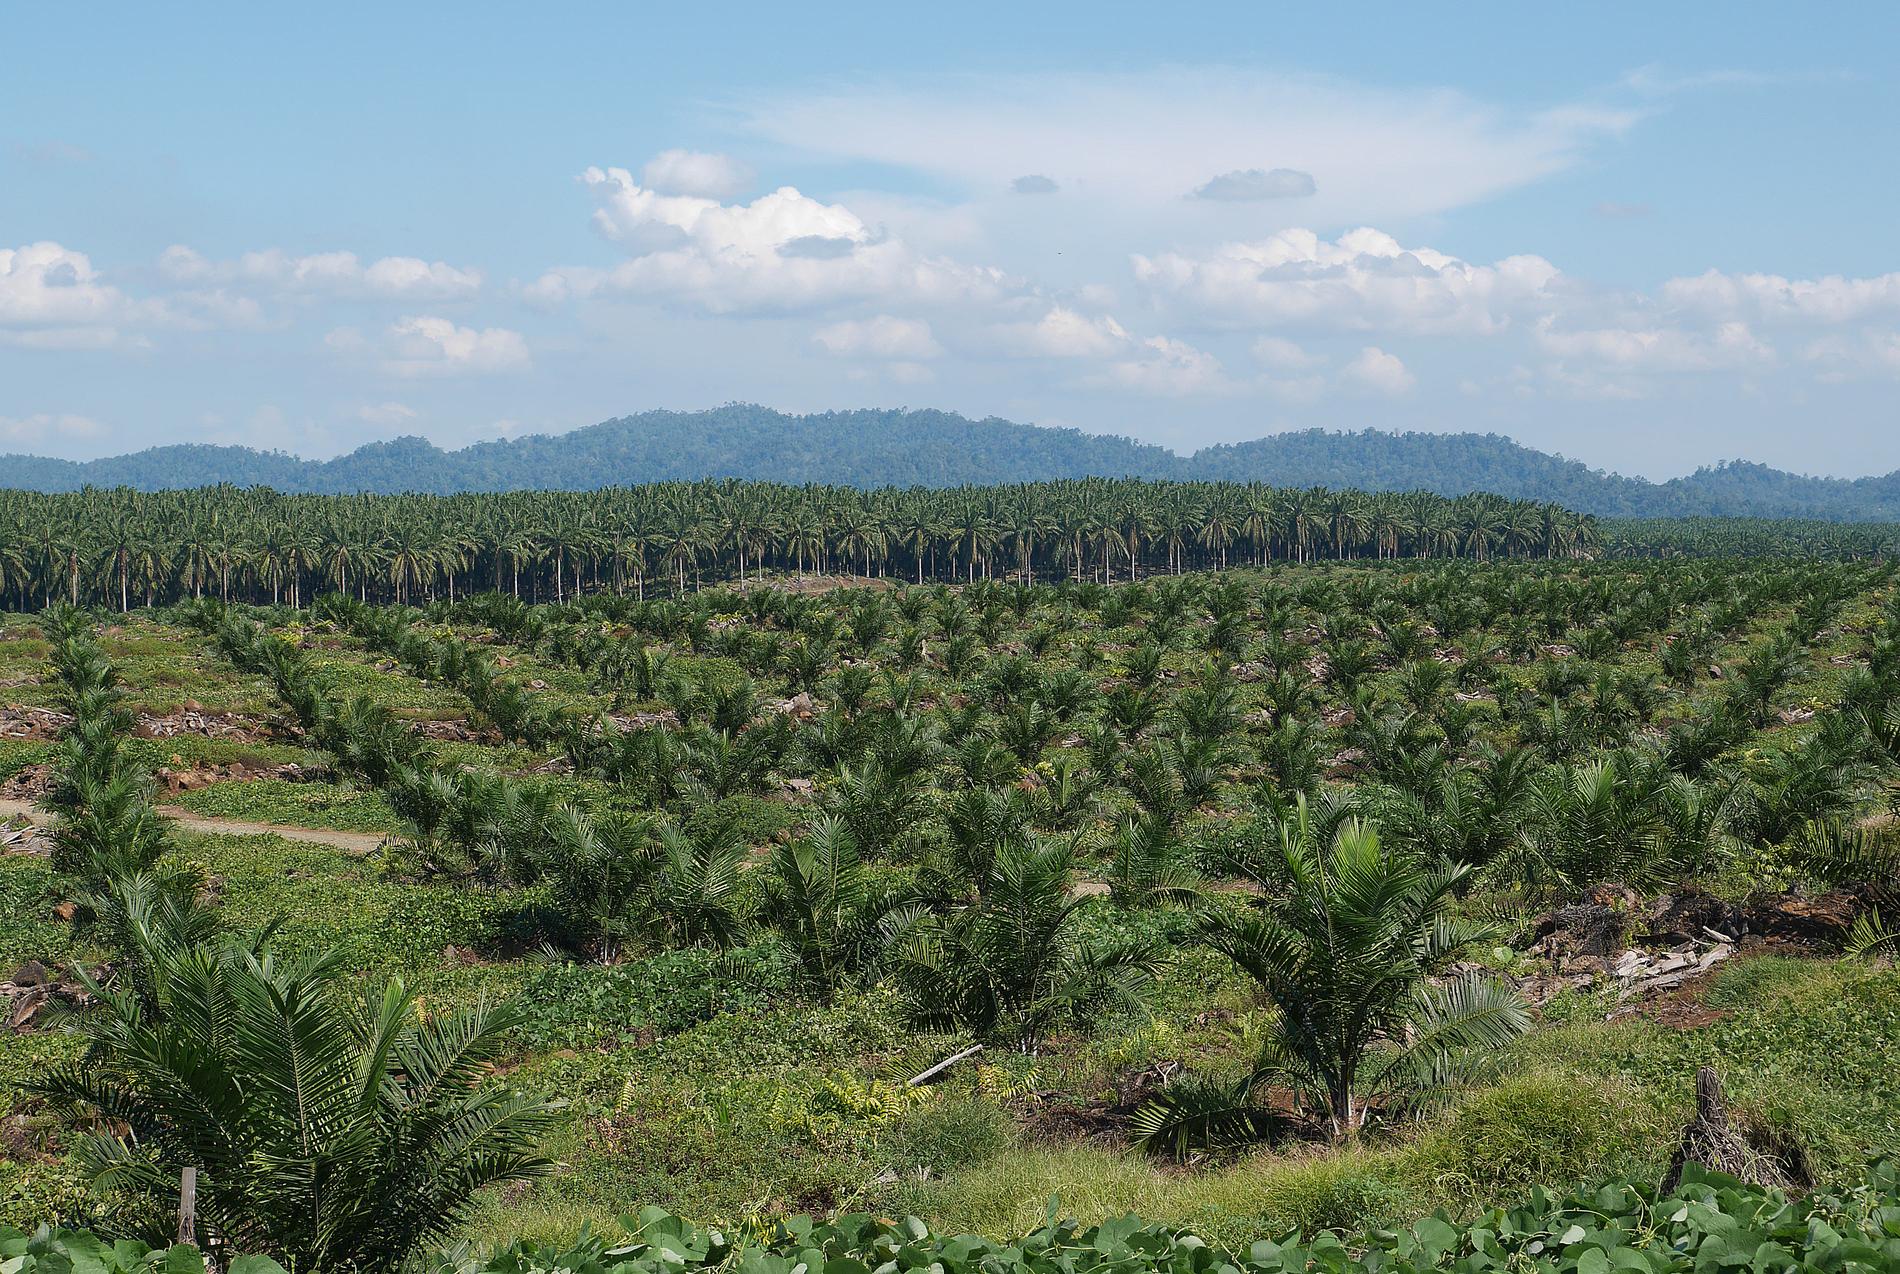 Så här ser det ut över stora delar av Borneo idag. Den ursprungliga regnskogen har huggits ned och ersatts av odlingar med oljepalmer. Palmerna i förgrunden är nyplanterade.